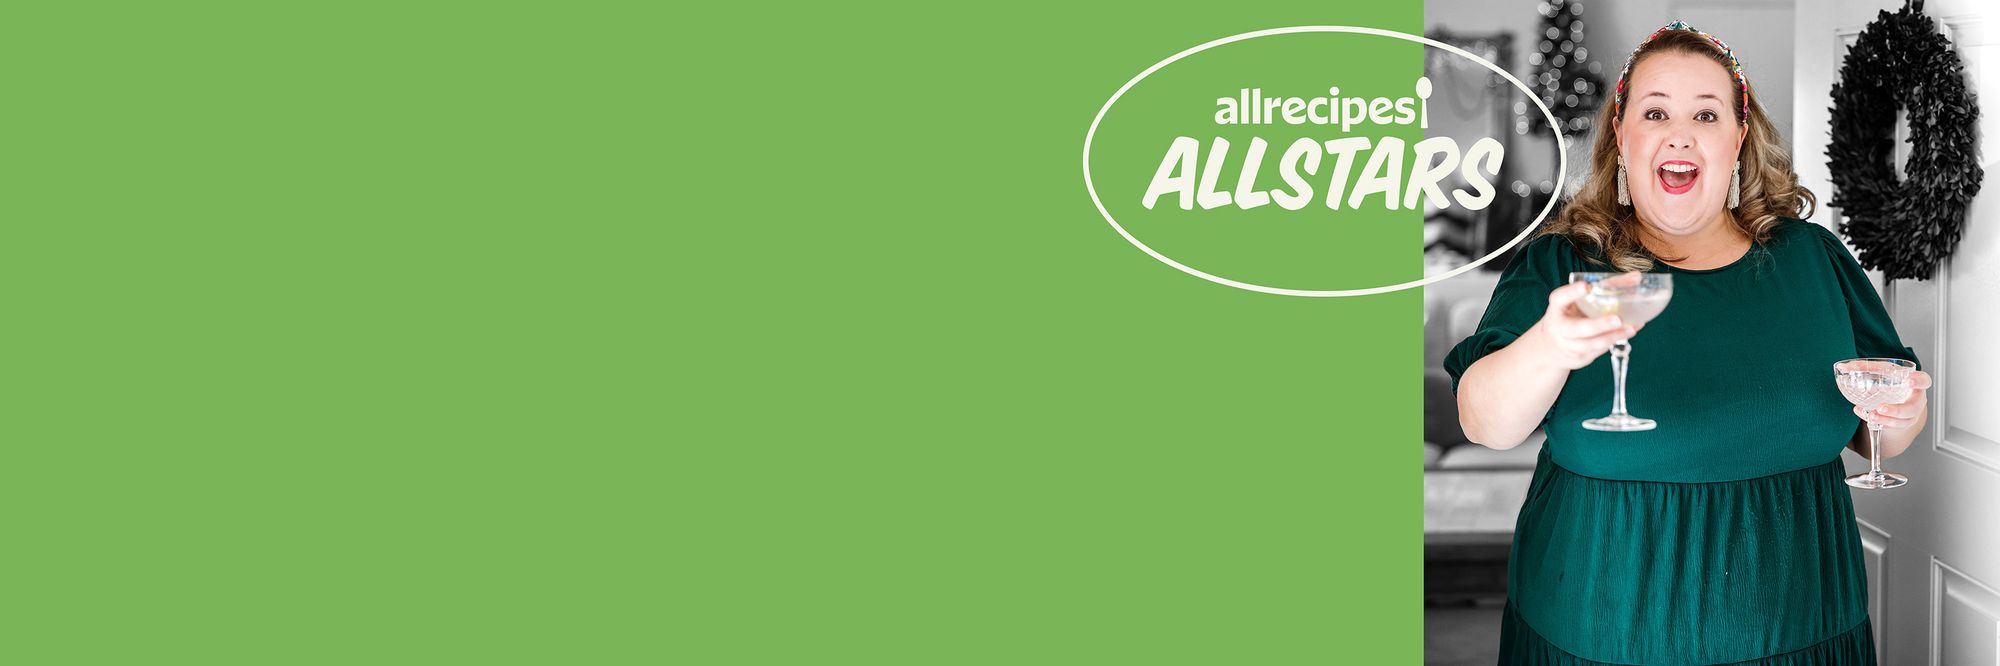 Allrecipes Allstar Ashley Berger